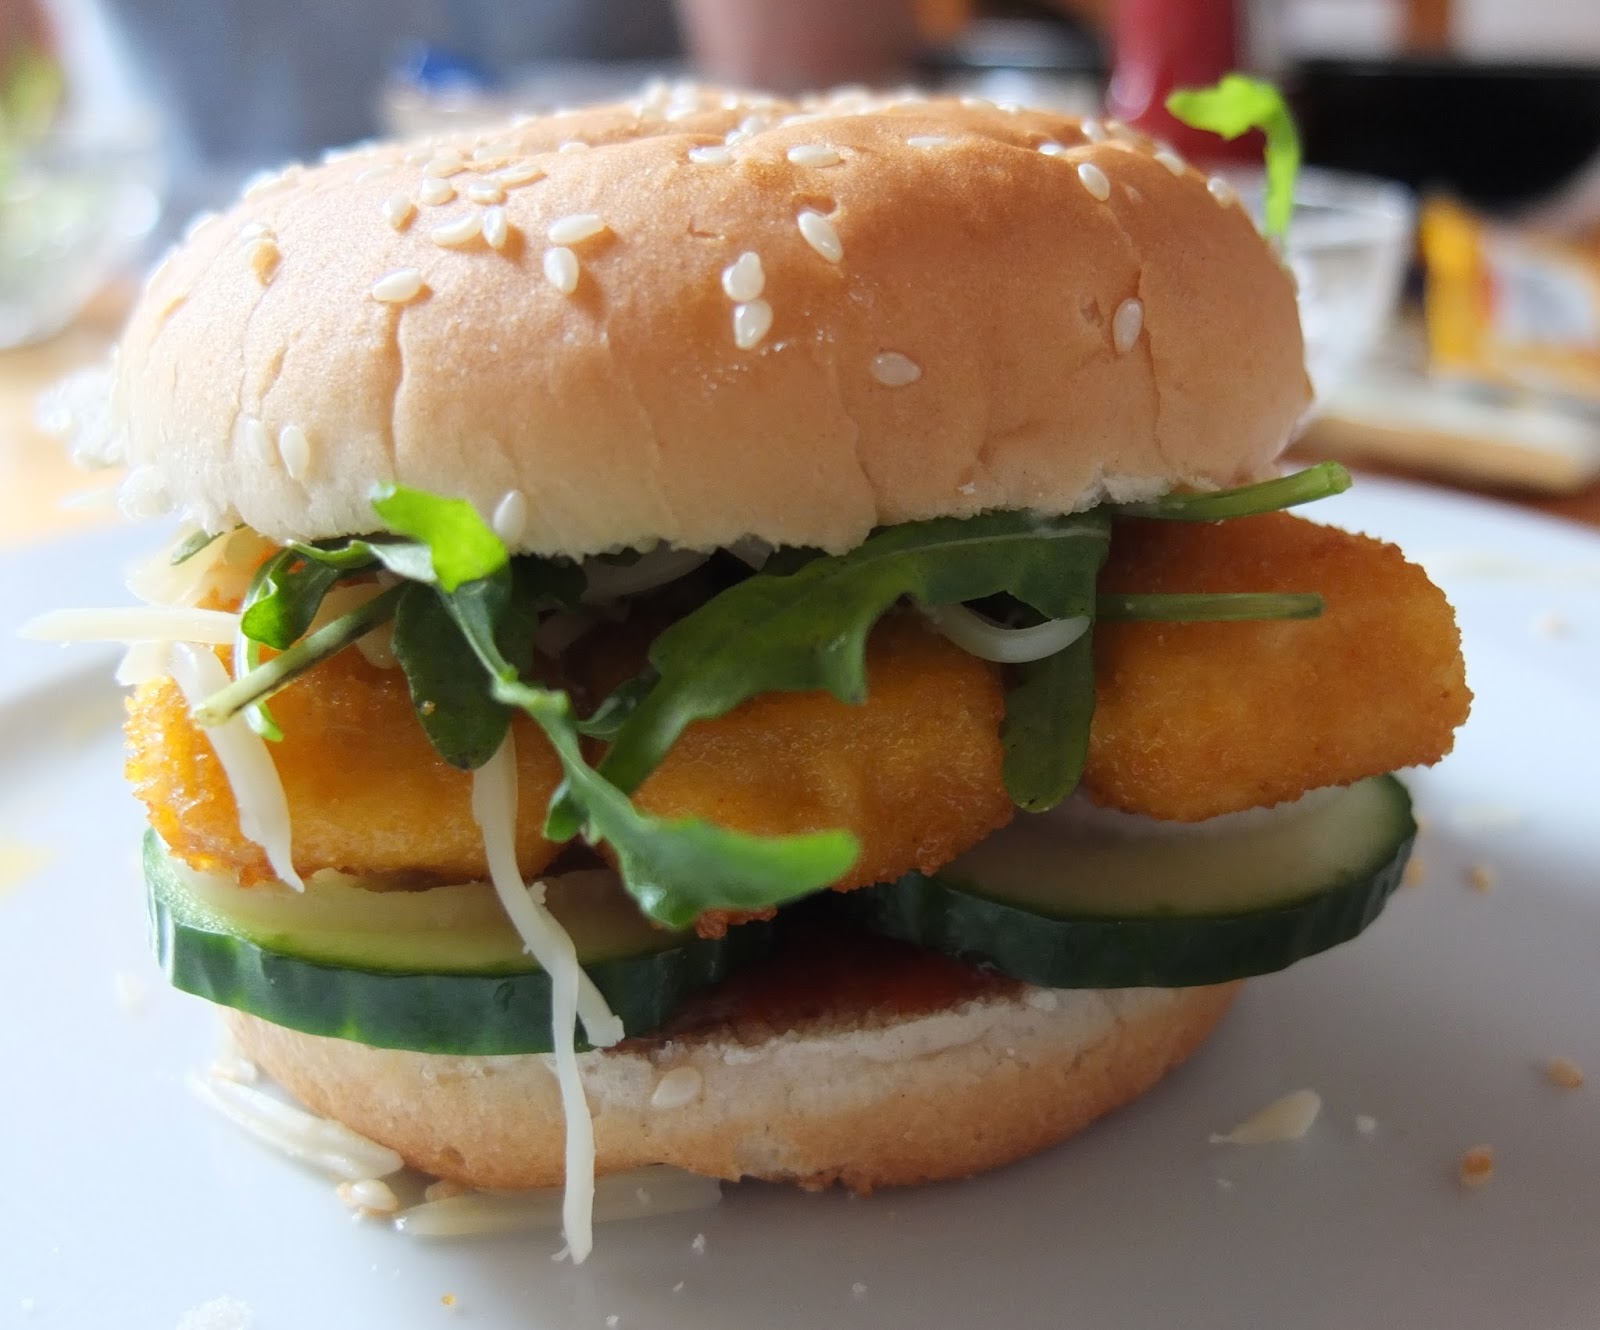 Fischstäbchen-Burger